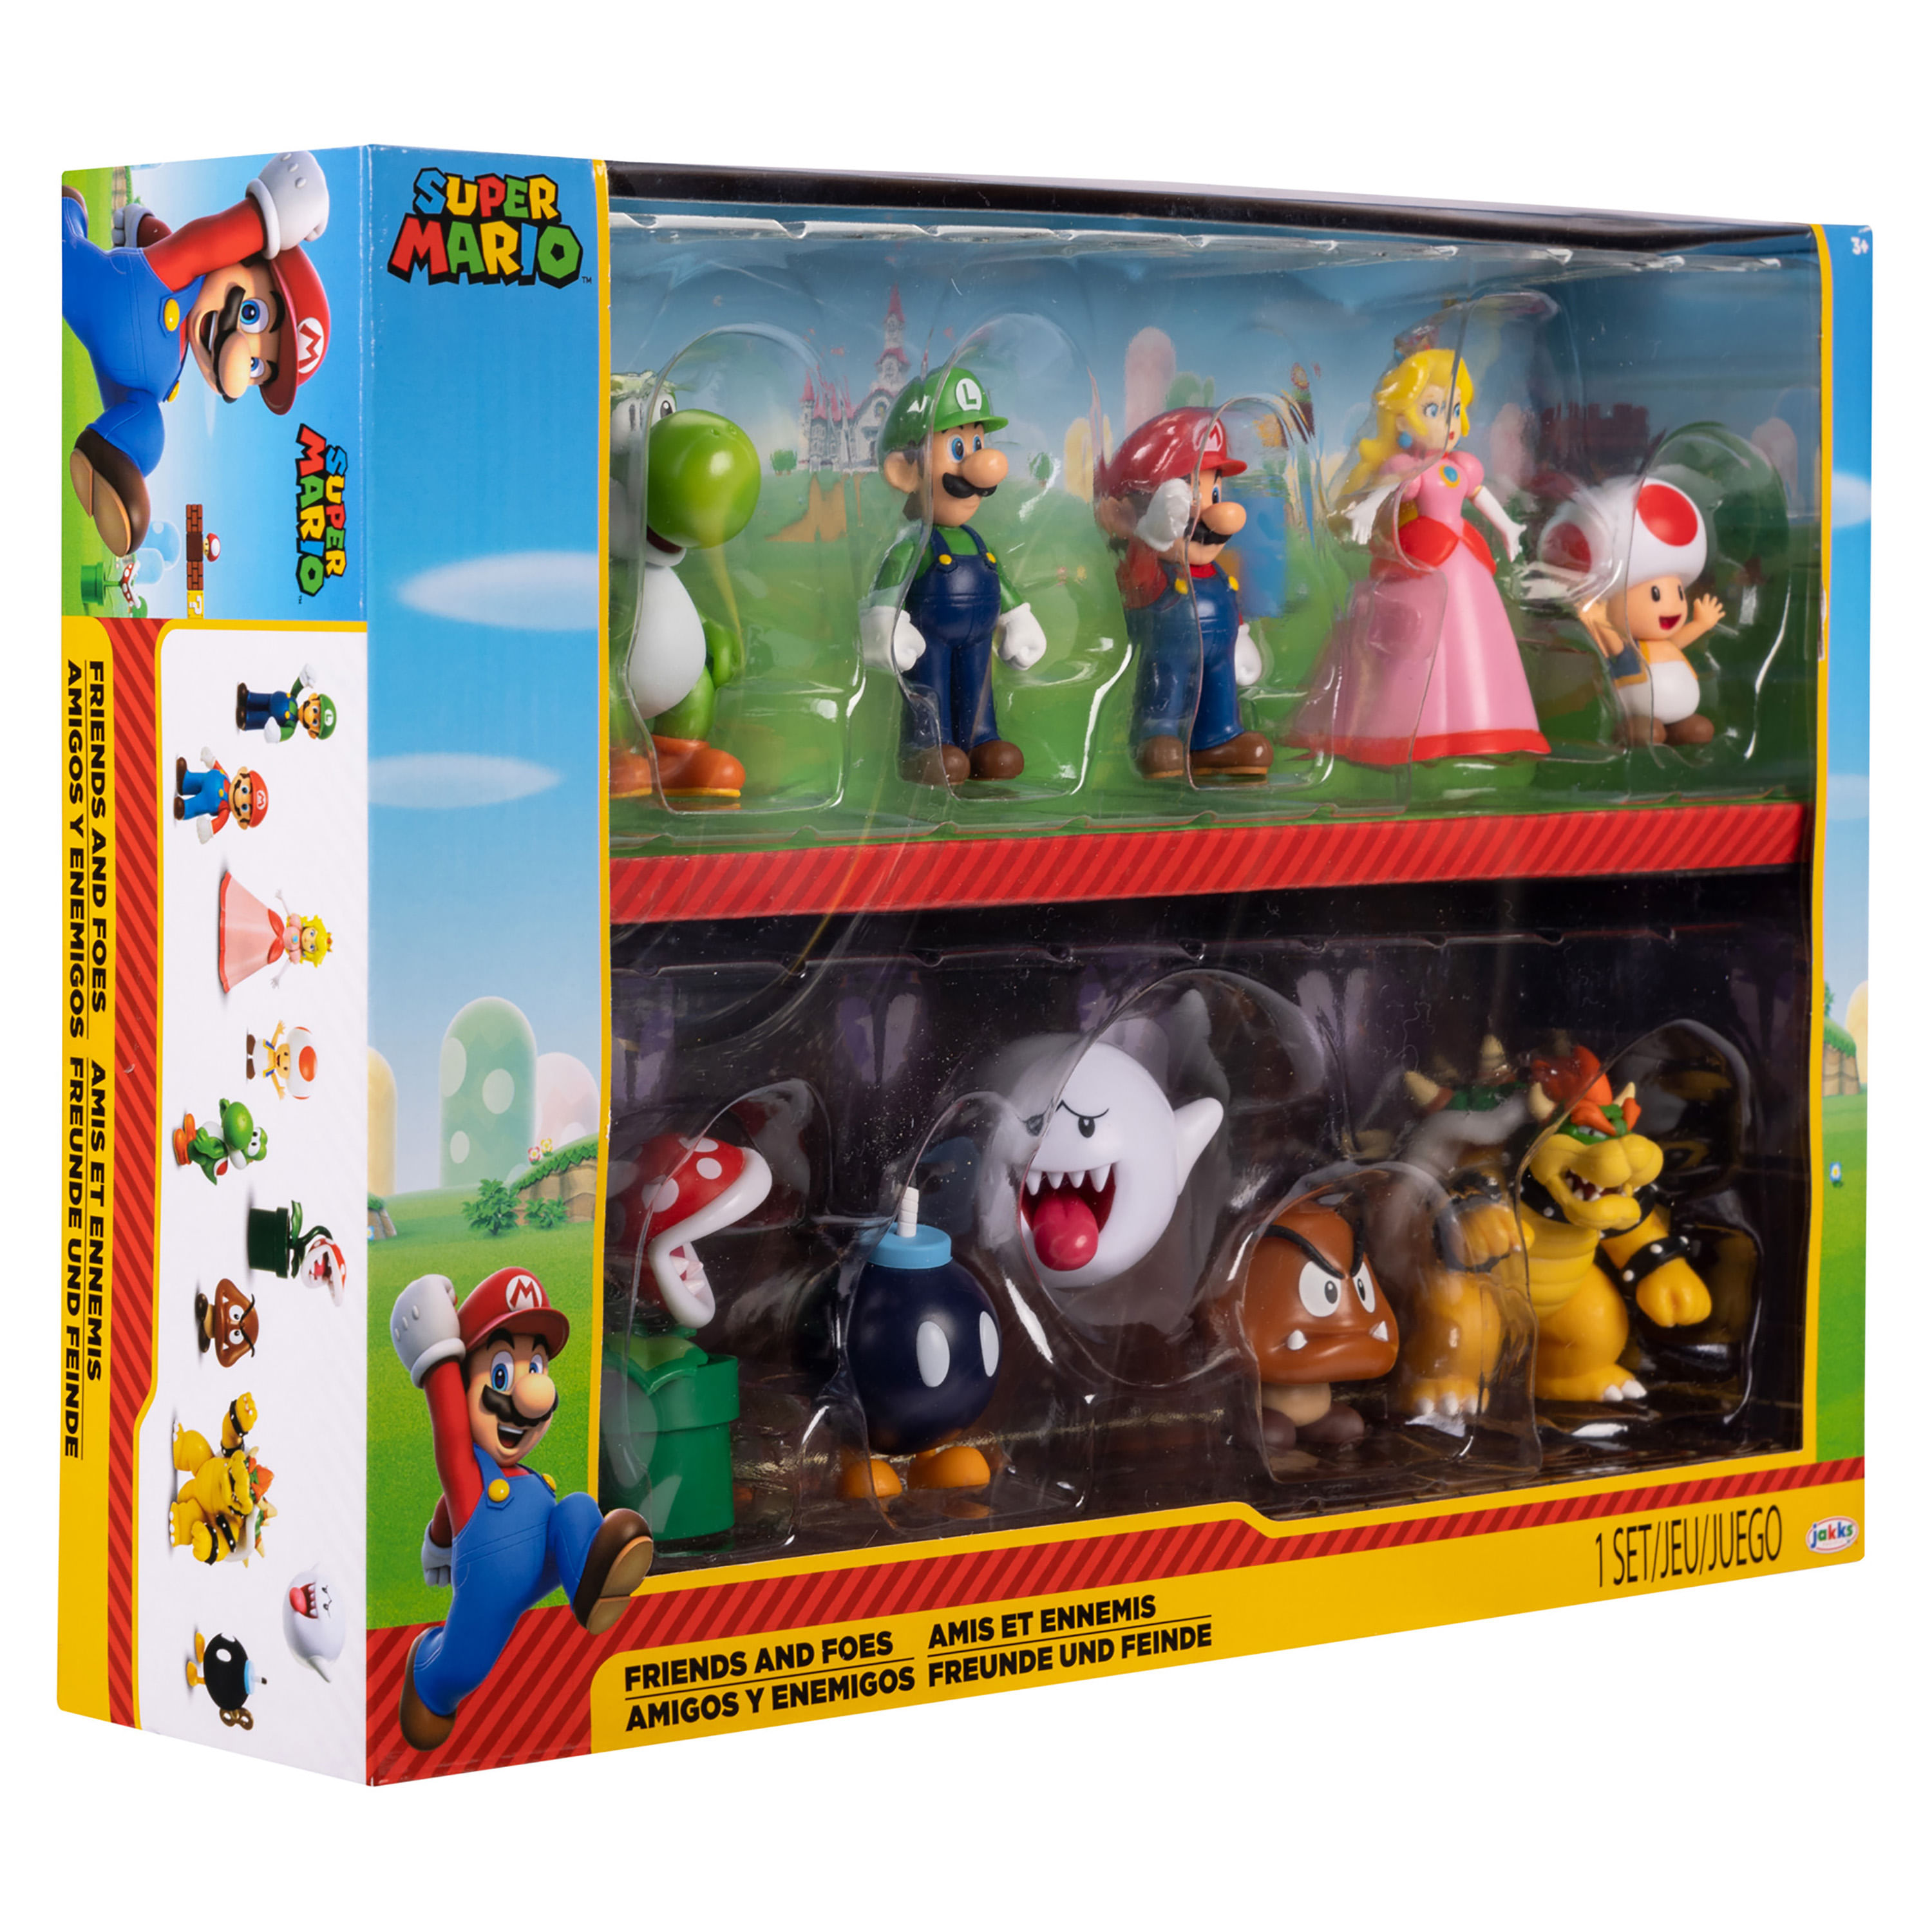 Las mejores ofertas en Super Mario Bros. juguetes y pasatiempos